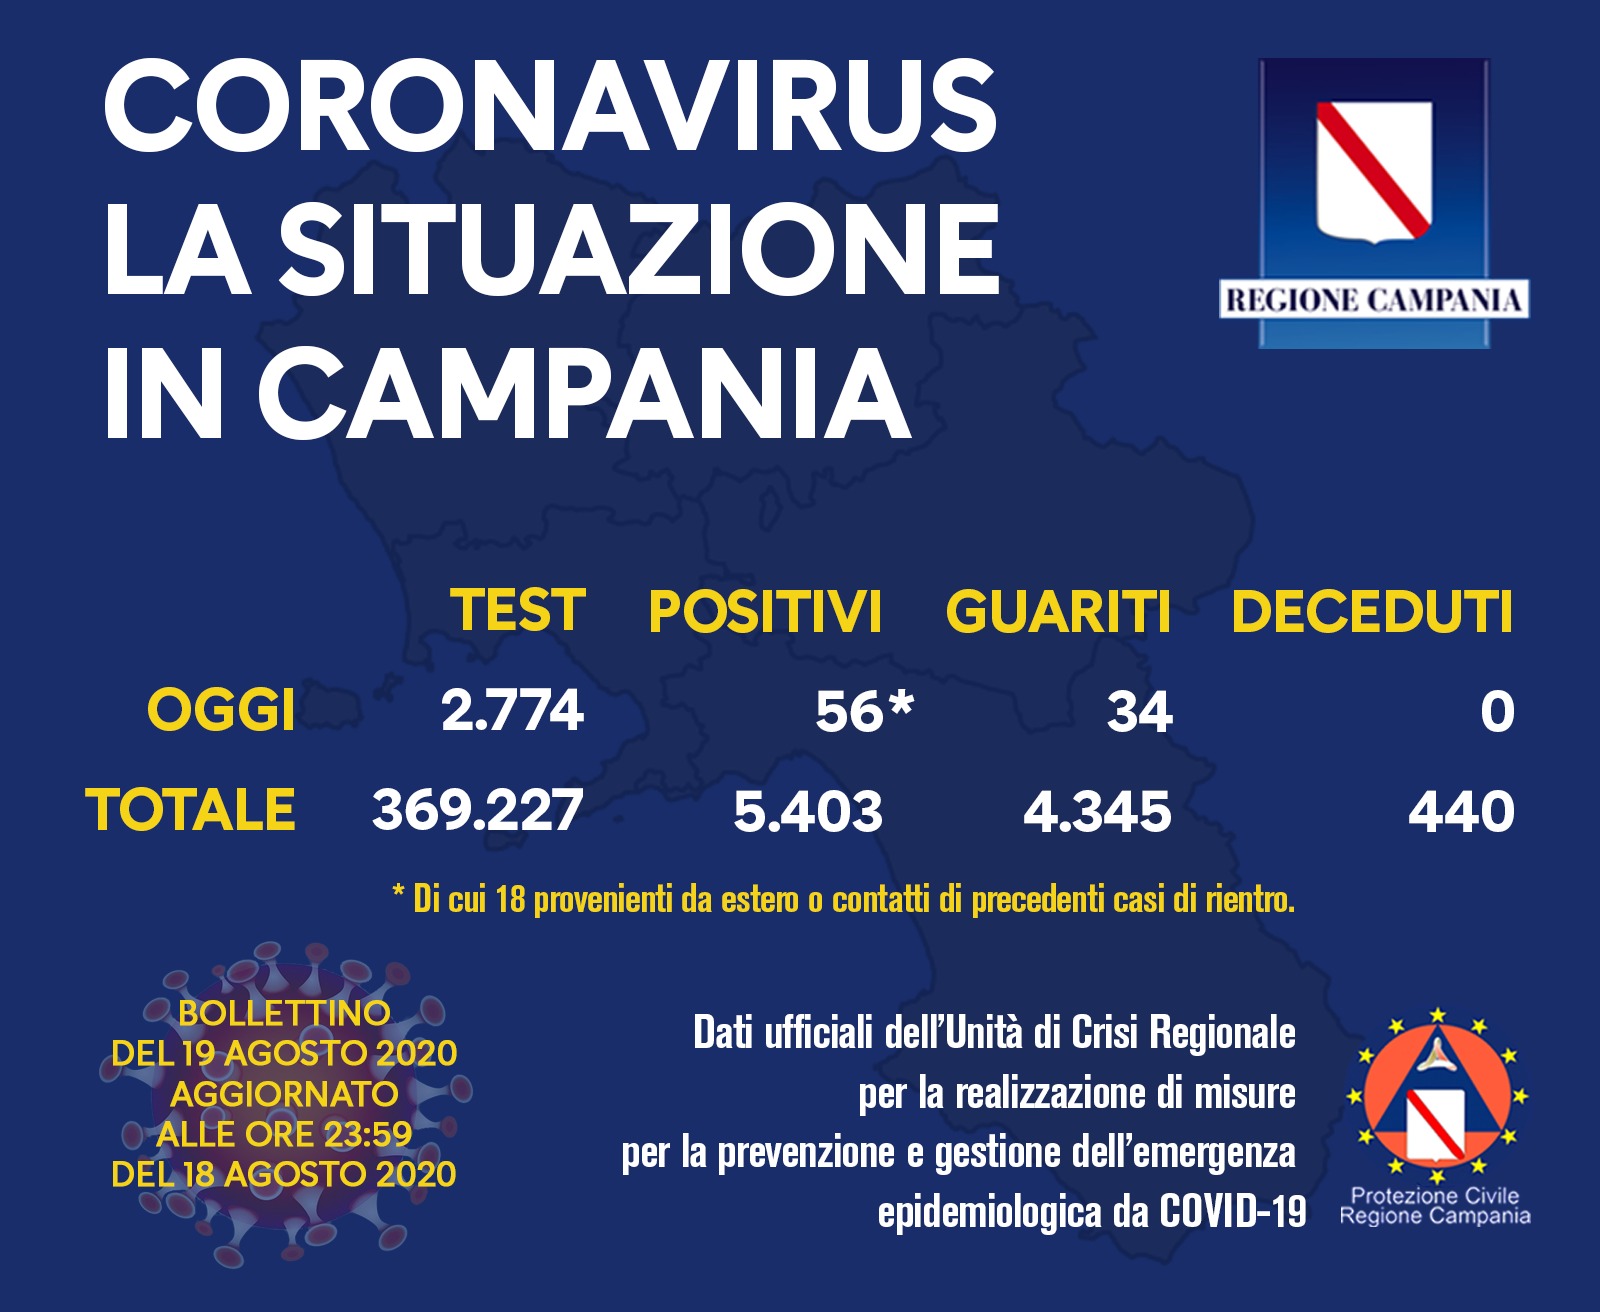 Campania, 56 positivi (di cui 18 provenienti dall’estero)